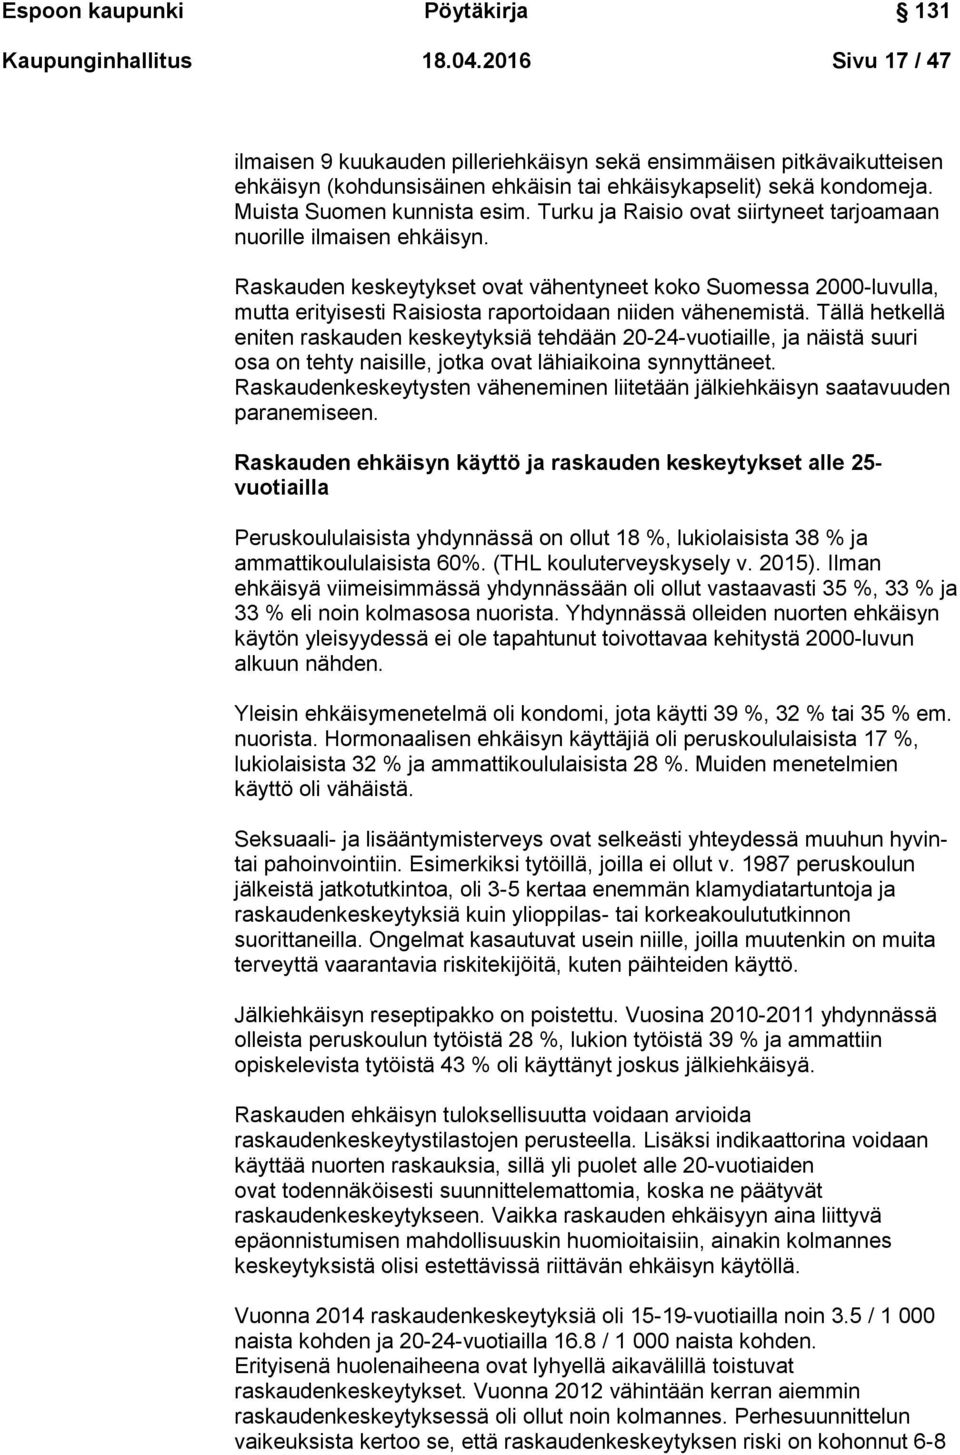 Turku ja Raisio ovat siirtyneet tarjoamaan nuorille ilmaisen ehkäisyn. Raskauden keskeytykset ovat vähentyneet koko Suomessa 2000-luvulla, mutta erityisesti Raisiosta raportoidaan niiden vähenemistä.